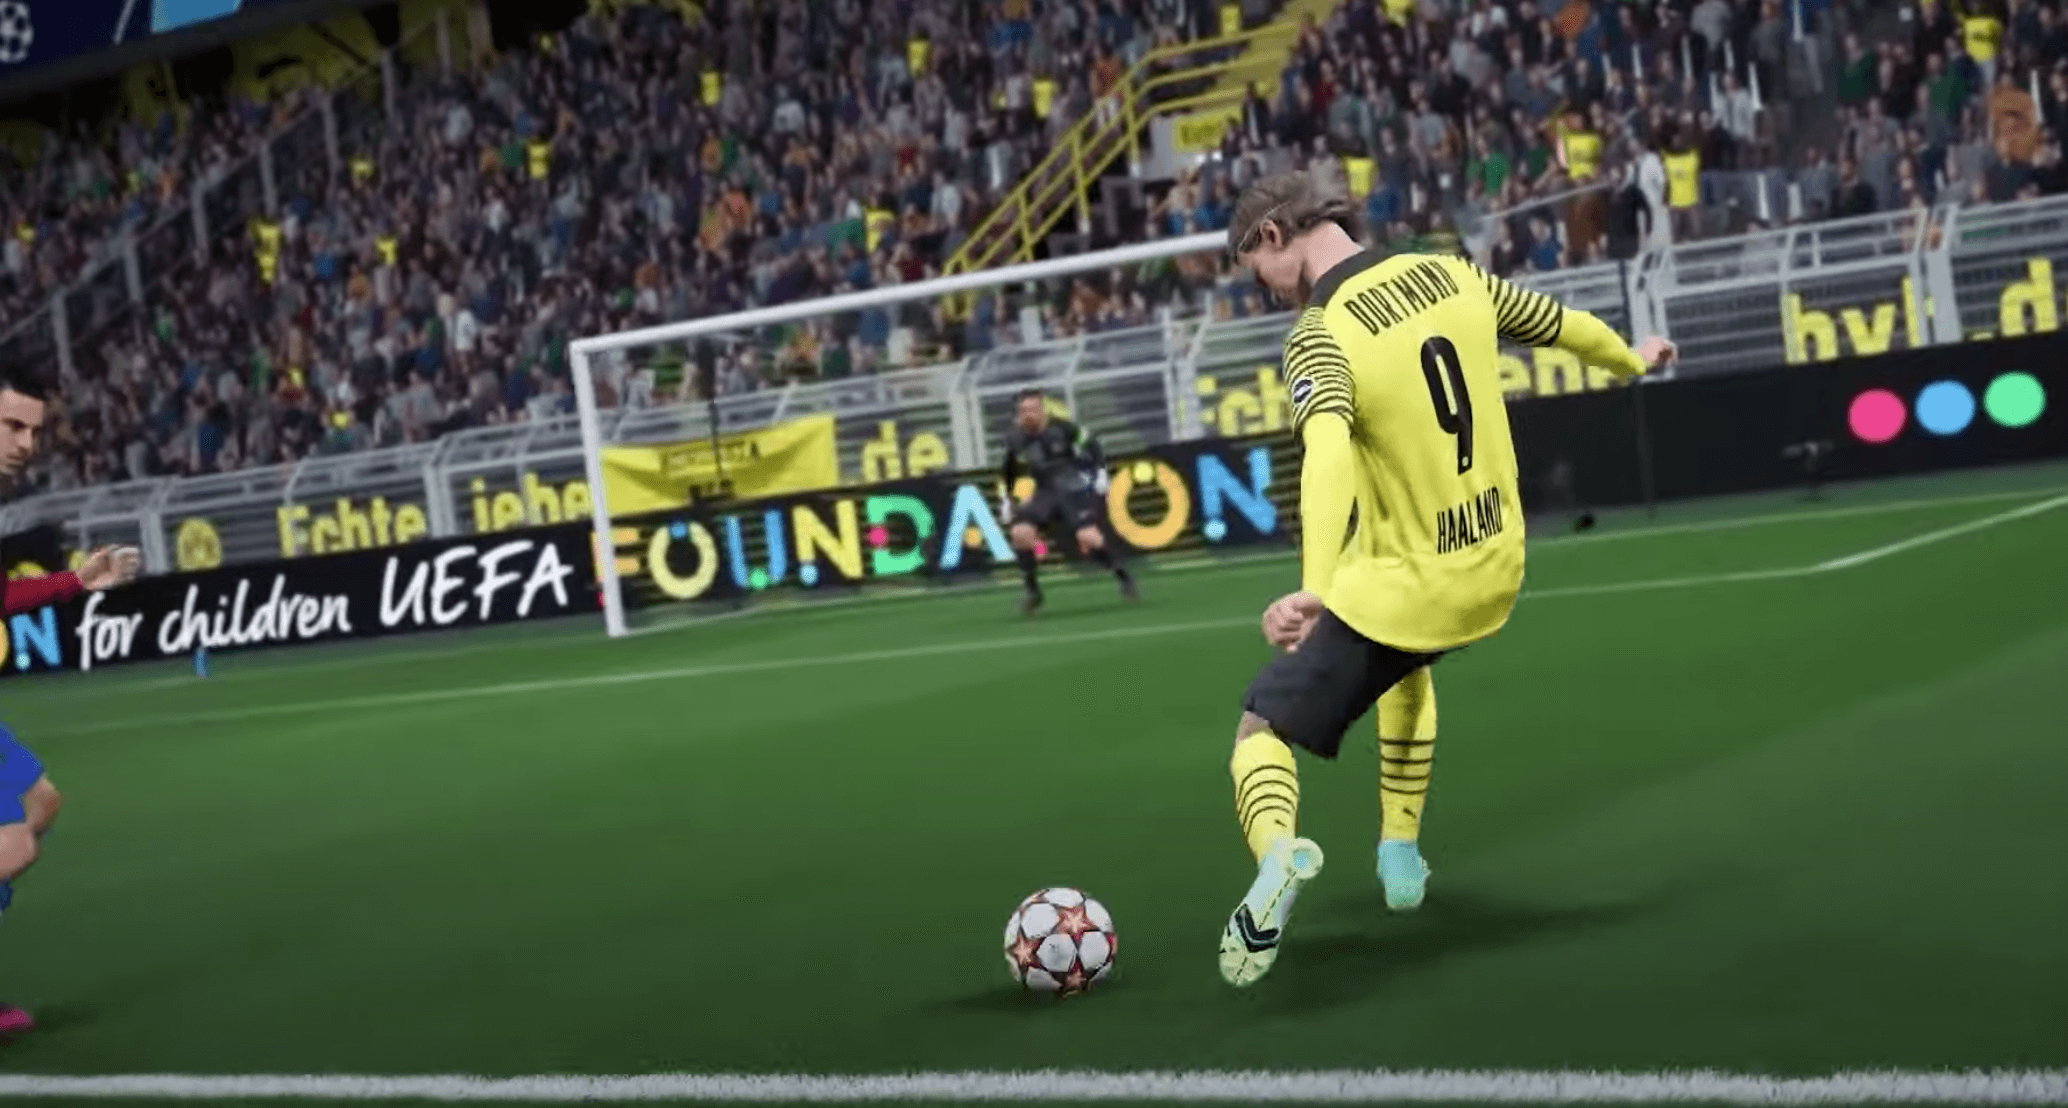 EA registra una patente para mejorar los servidores de FIFA y otros juegos